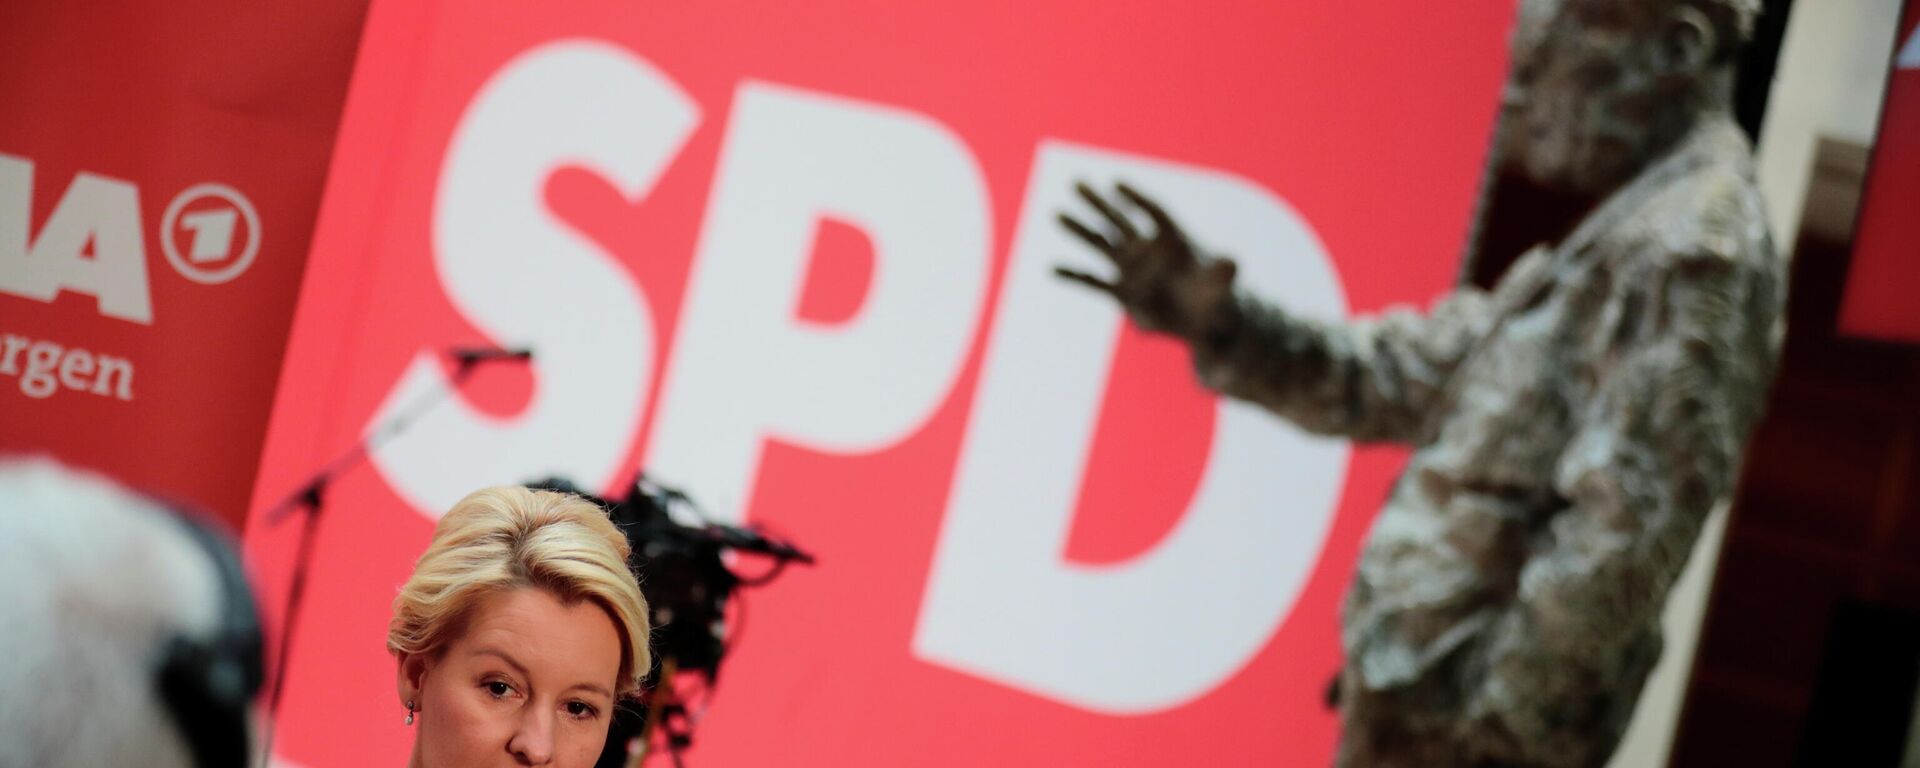 Franziska Giffey, del Partido Socialdemócrata (SPD), durante una entrevista, un día después de las elecciones parlamentarias, en Berlín, Alemania, el 27 de septiembre de 2021 - Sputnik Mundo, 1920, 27.09.2021